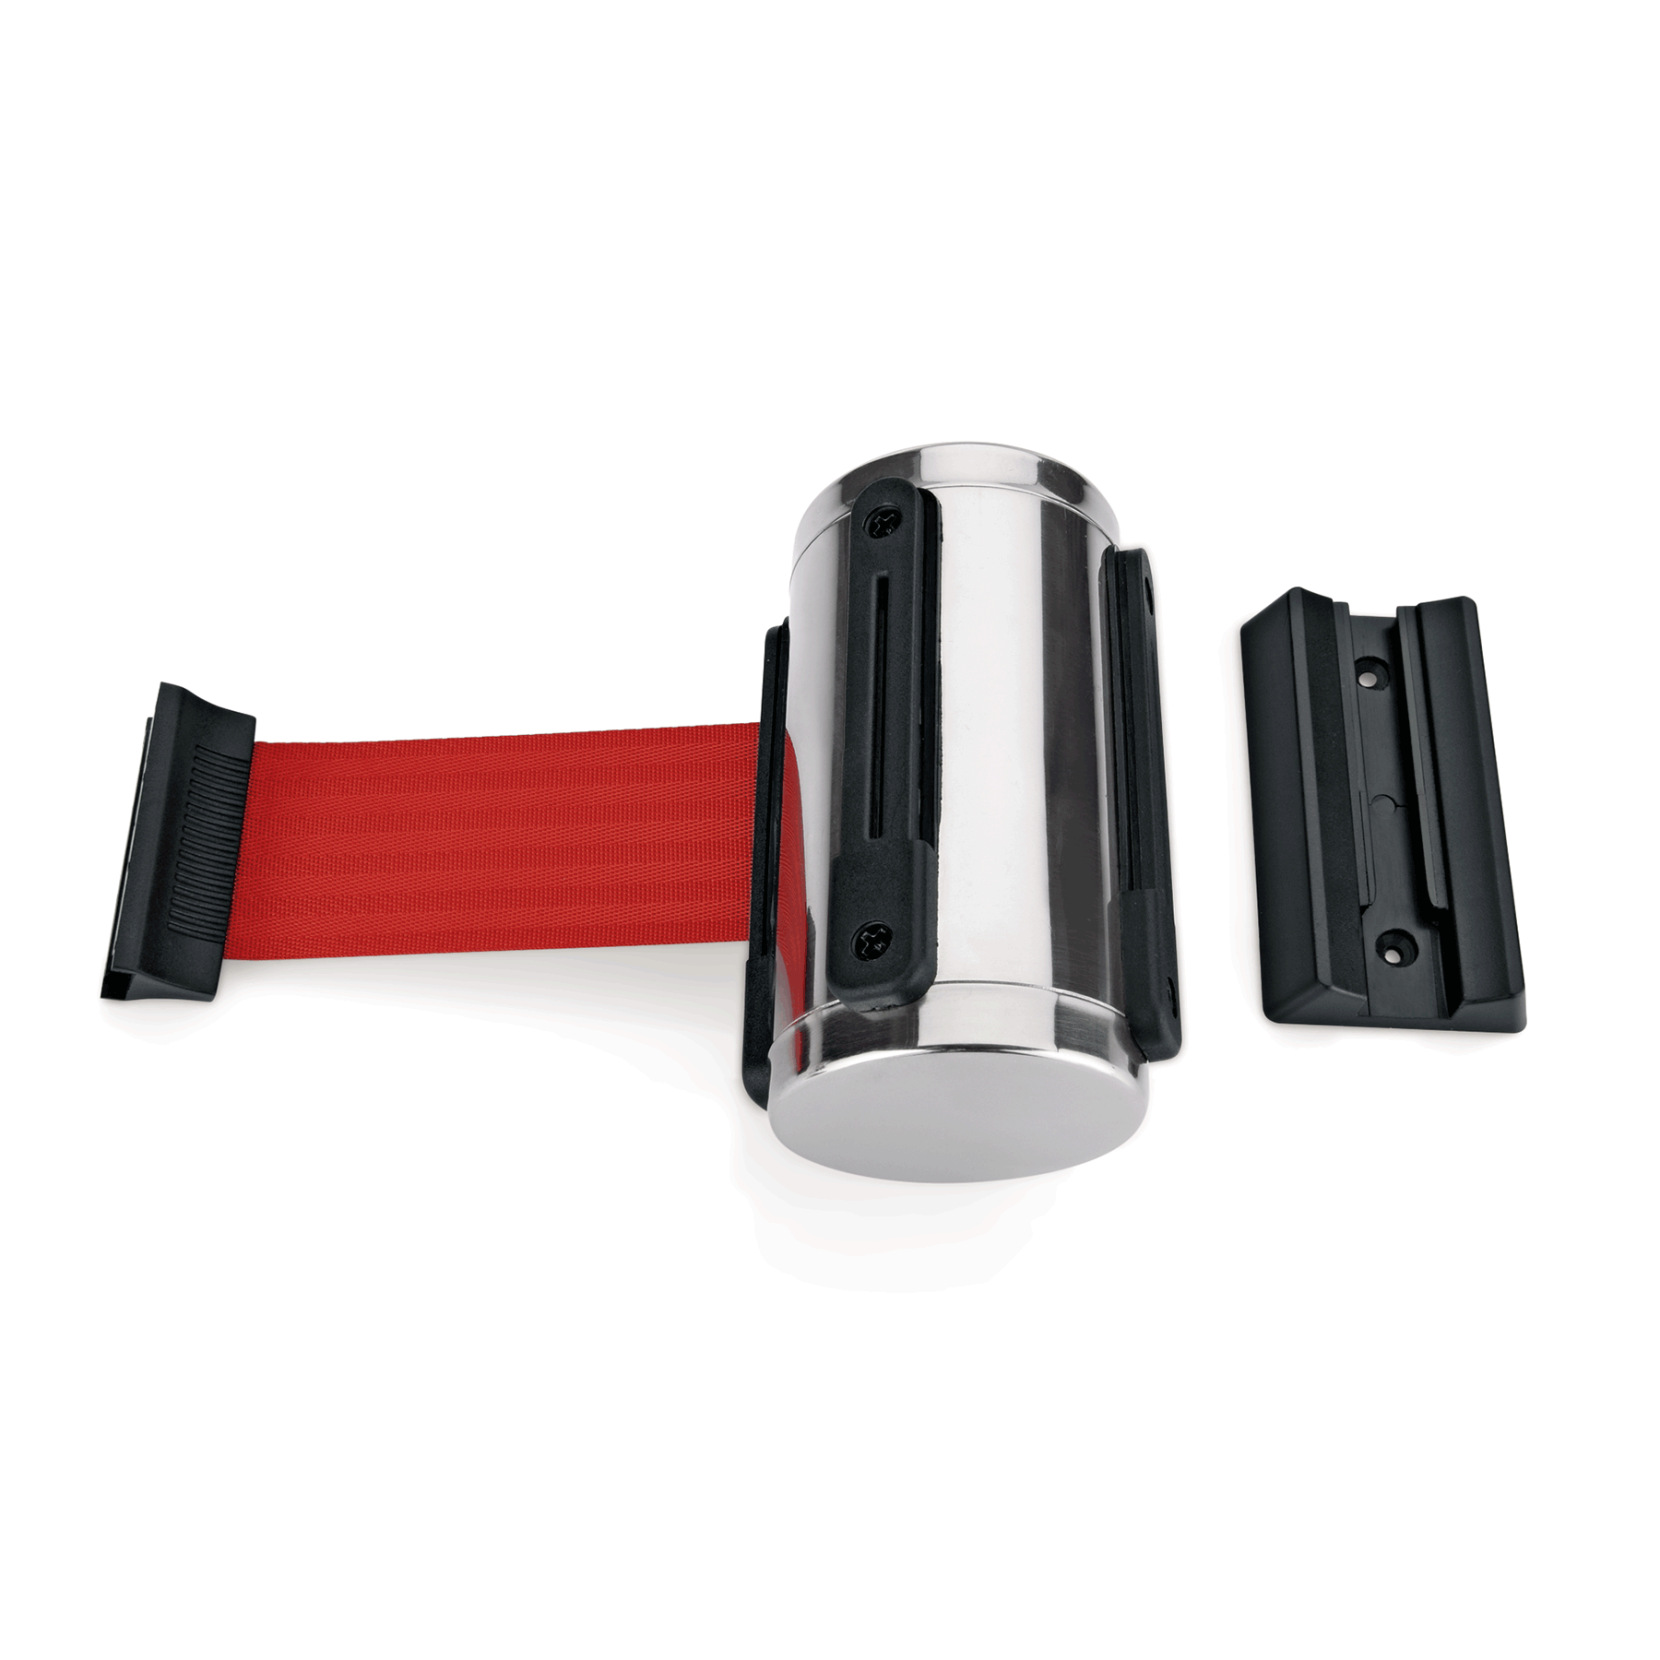 Gurtband Highflex für Wandmontage, 3 m, rot, inkl. Wandhalter